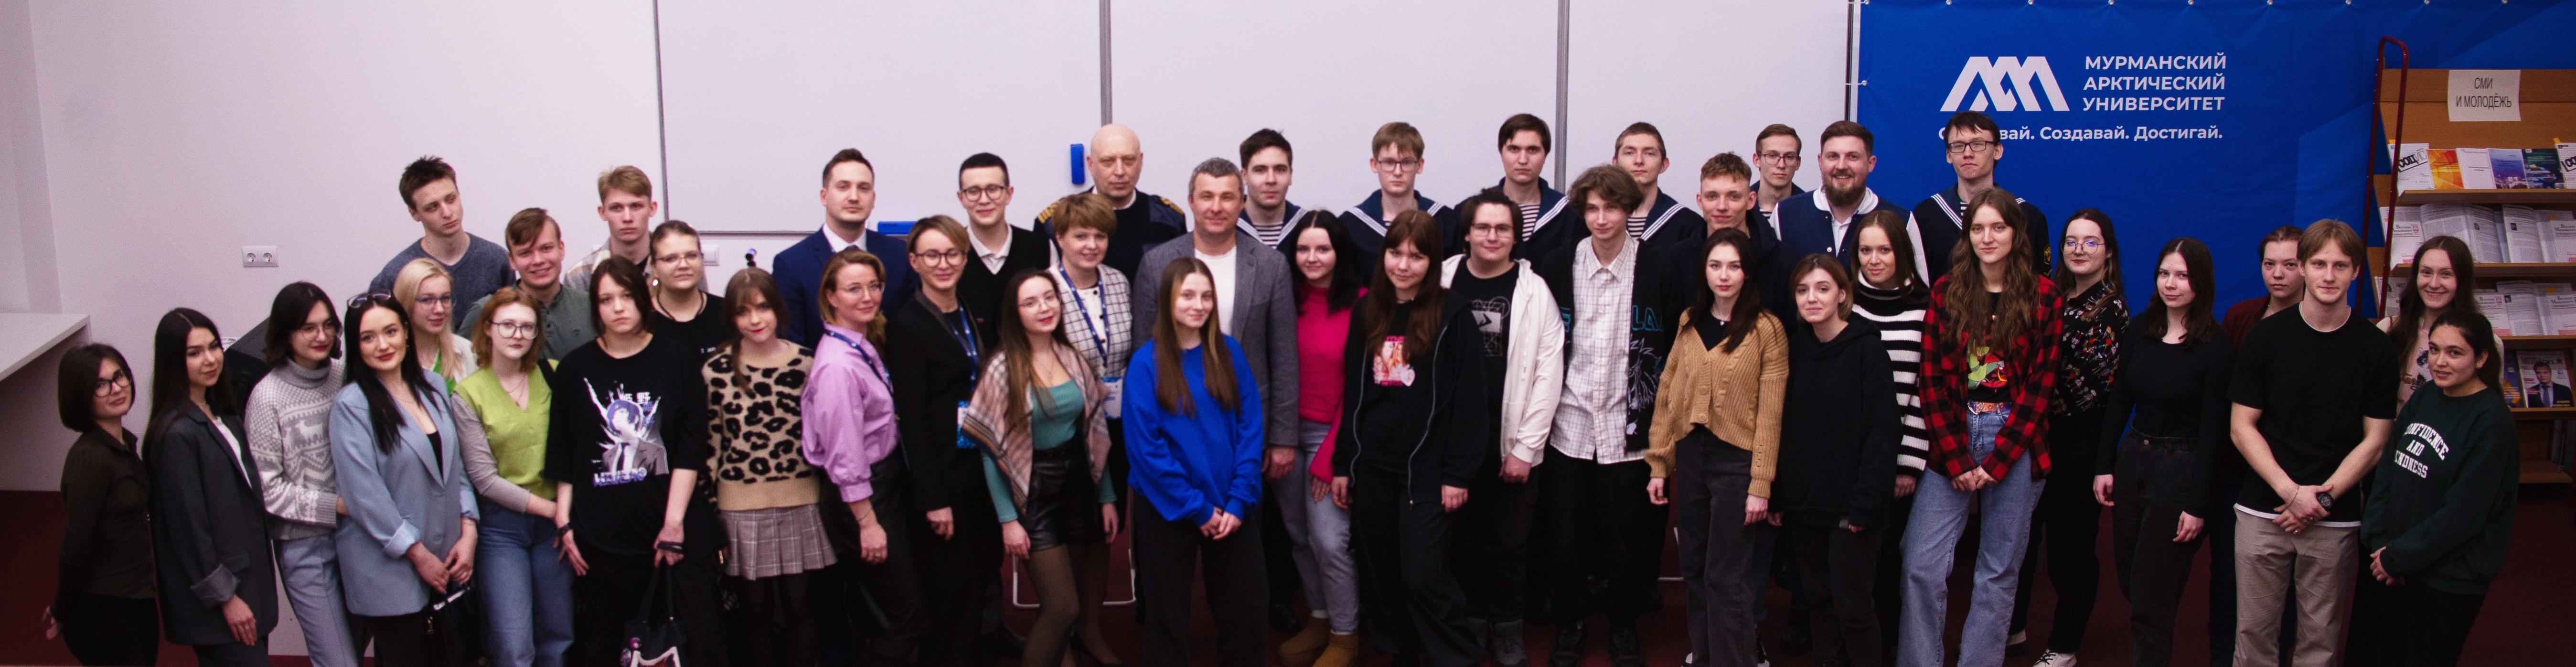 В Мурманске открылась региональная площадка студенческого Медиацентра Минобрнауки России